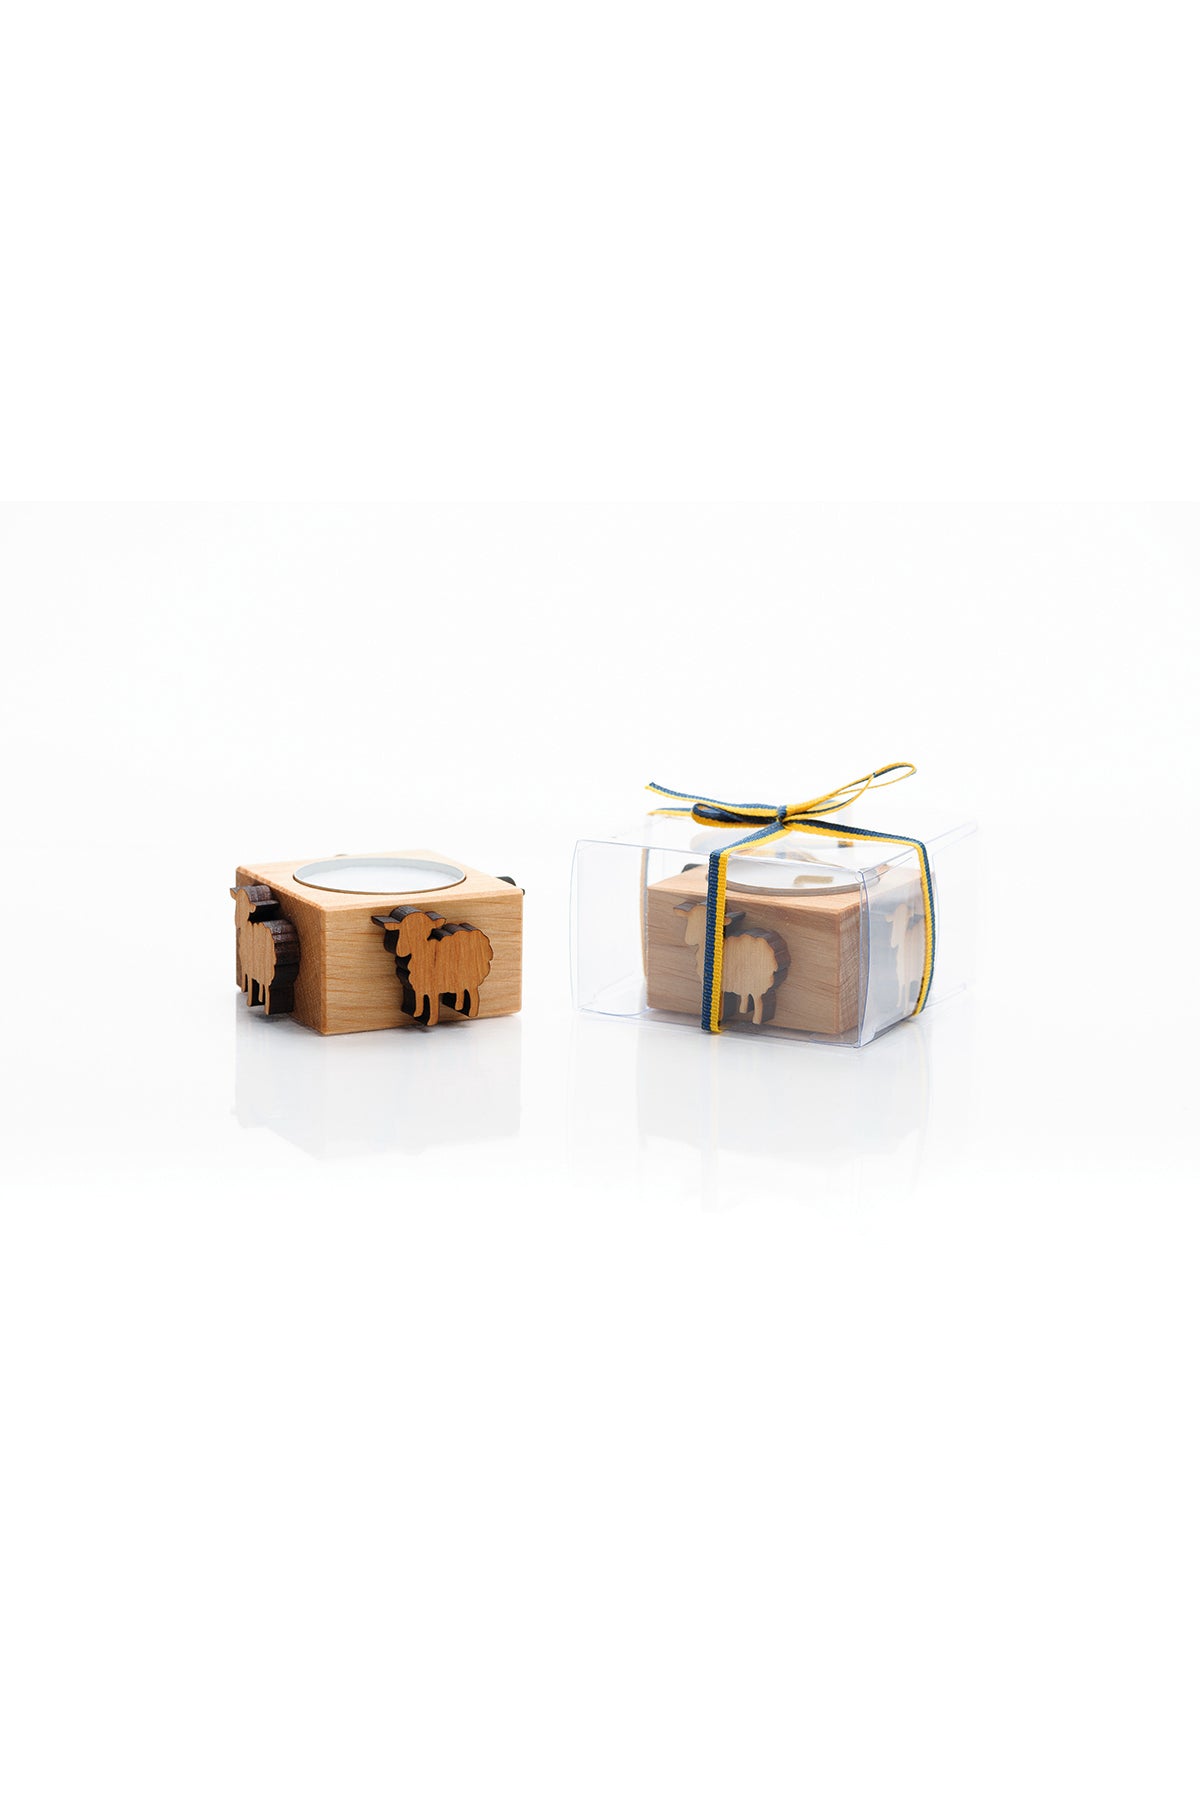 Tealight holder / salt bowl 6.5cm in gift packaging | Sheep